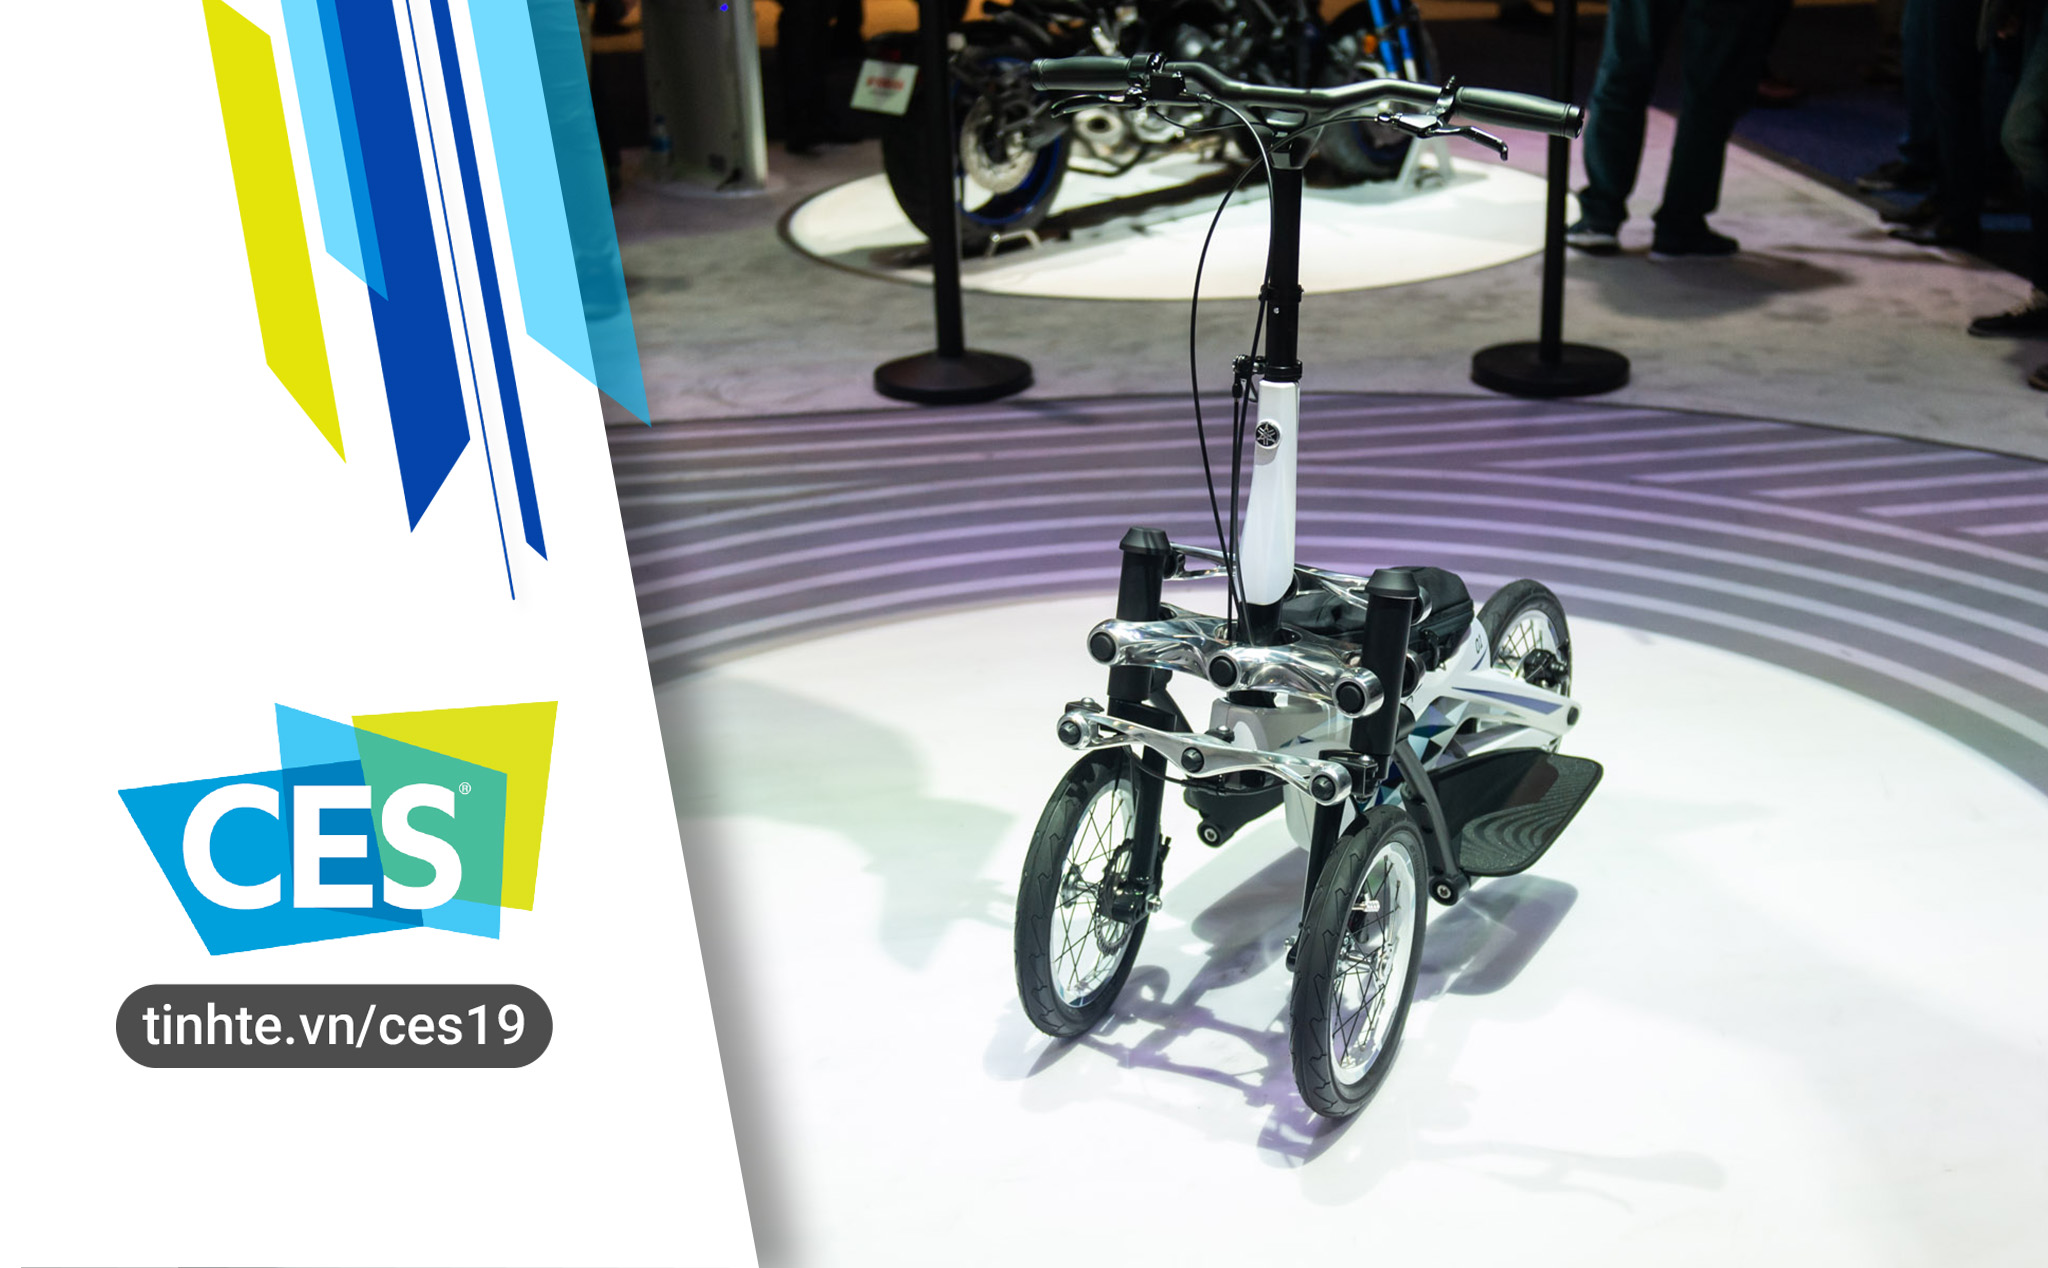 #CES19 Trên tay xe điện cá nhân Yamaha Tritown - 3 bánh, 40 kg, chạy được 32 km